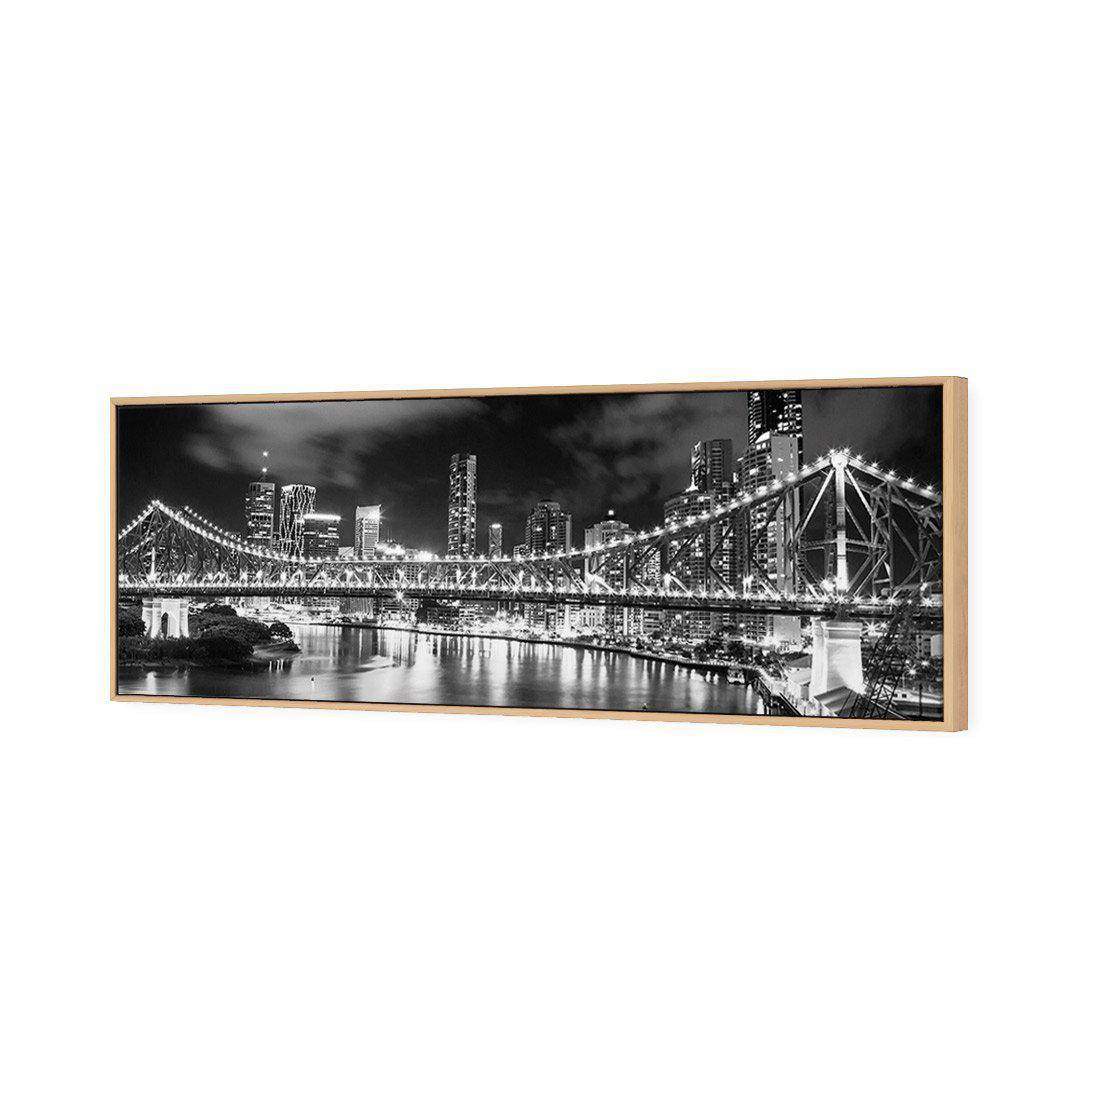 Story Bridge 2015, B&W Canvas Art-Canvas-Wall Art Designs-60x20cm-Canvas - Oak Frame-Wall Art Designs